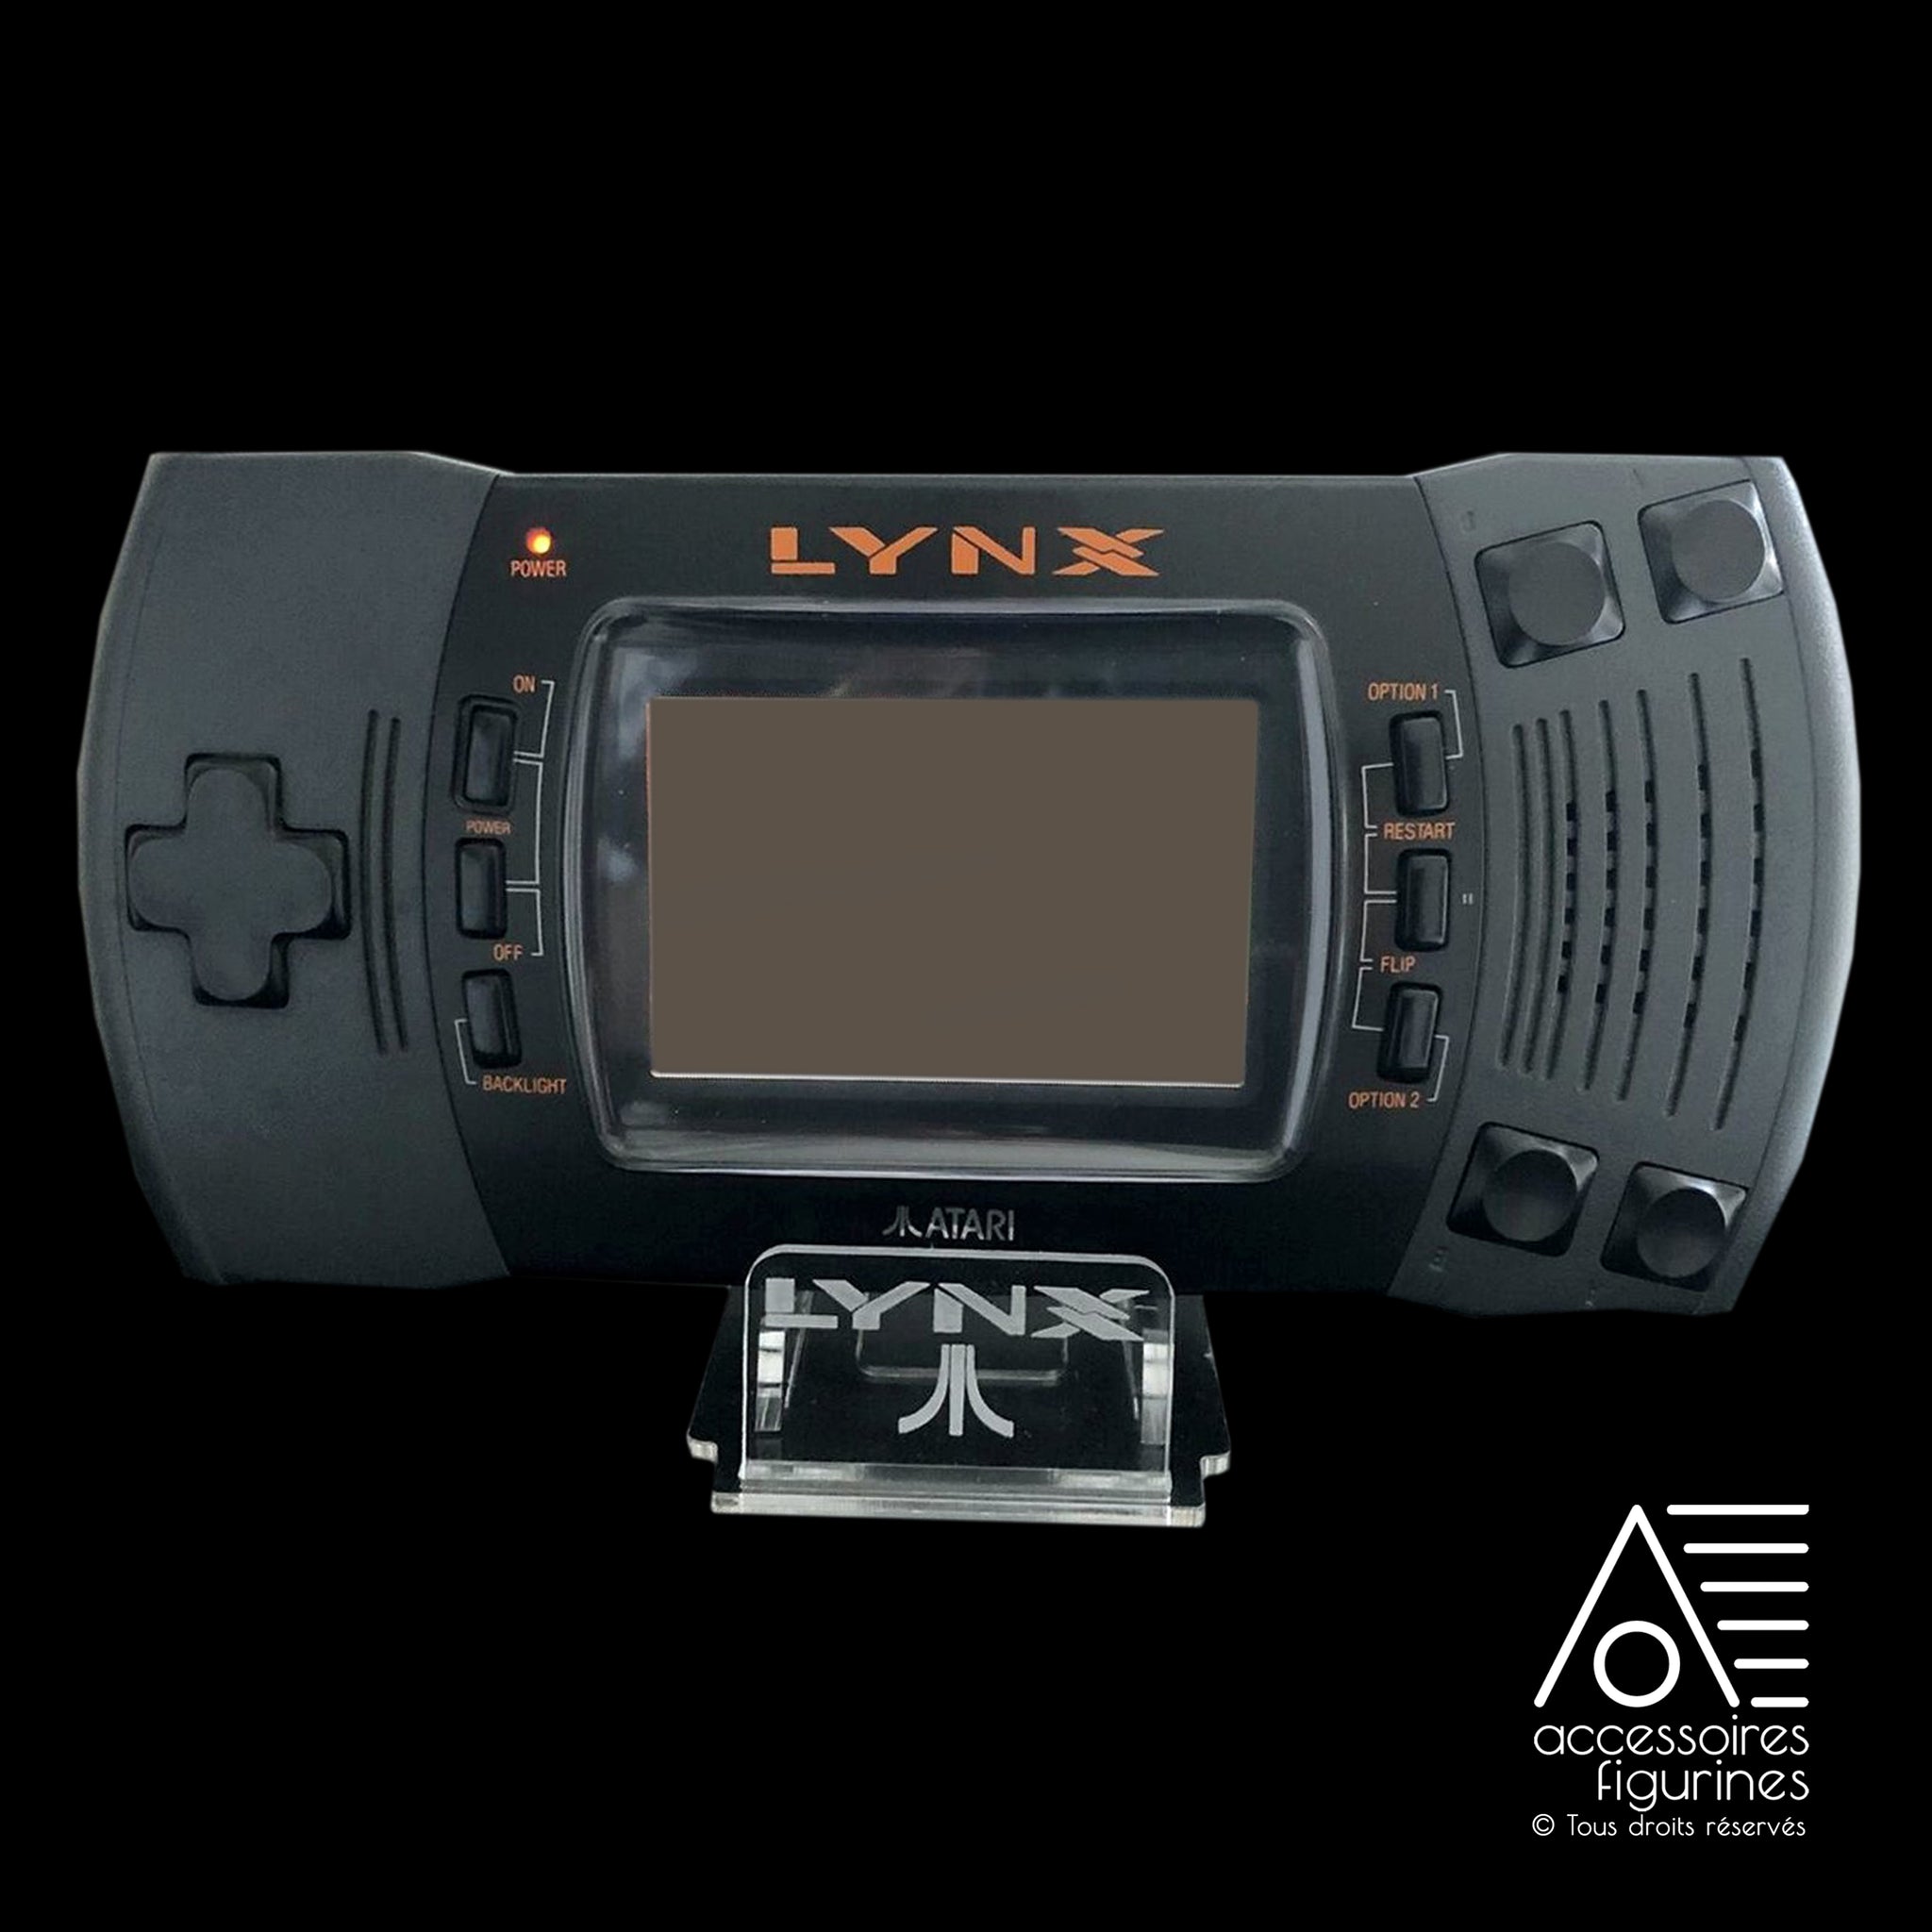 Support Atari Lynx II